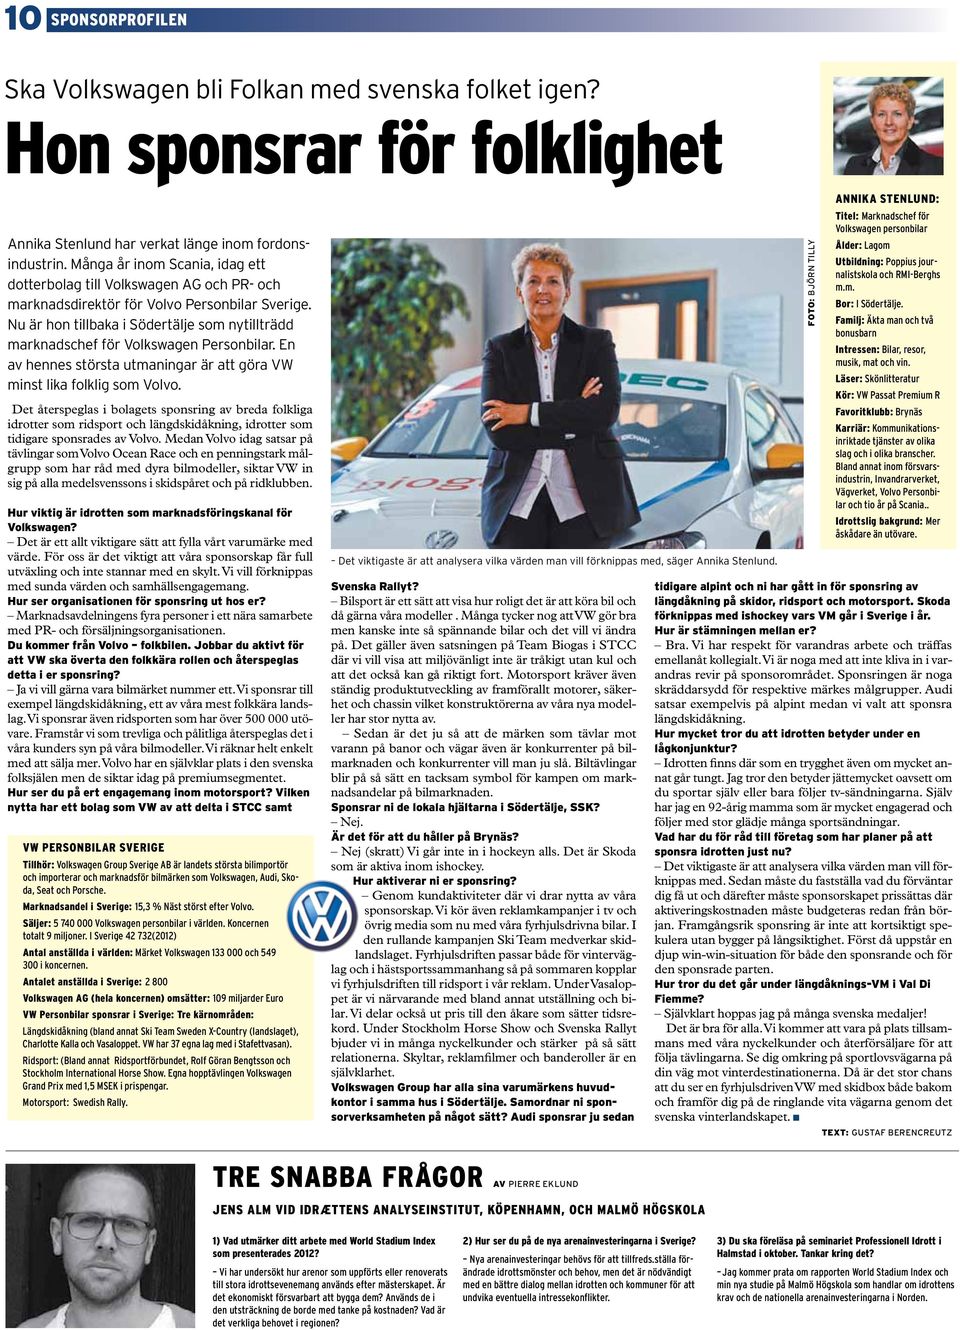 Nu är hon tillbaka i Södertälje som nytillträdd marknadschef för Volkswagen Personbilar. En av hennes största utmaningar är att göra VW minst lika folklig som Volvo.